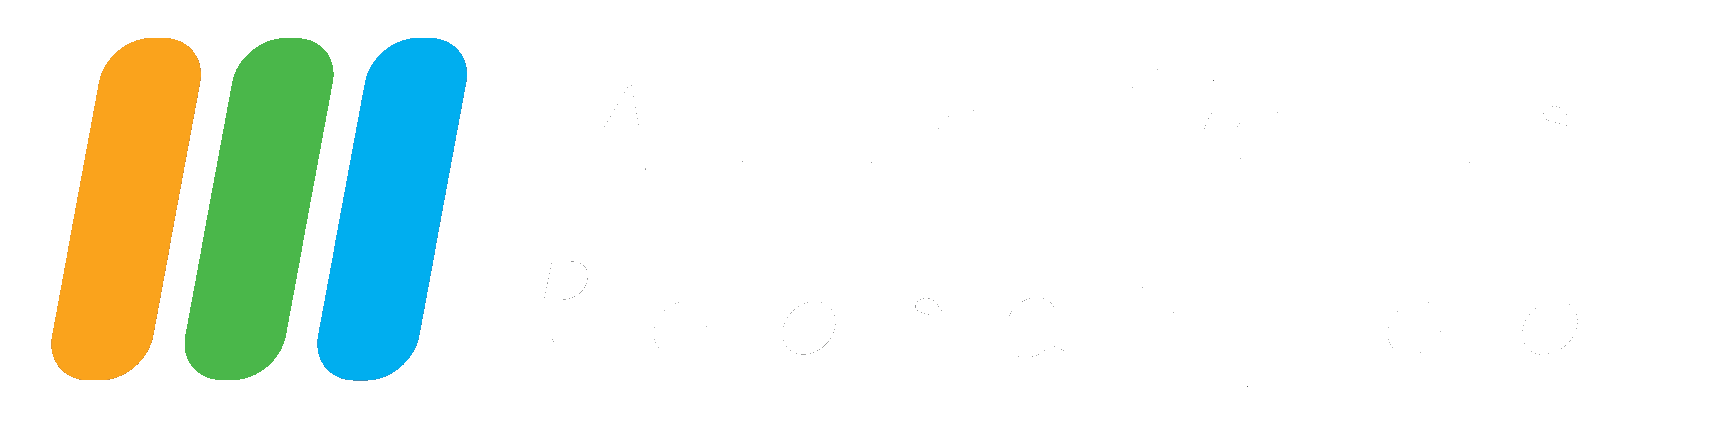 Auto Parts Roosendaal logo